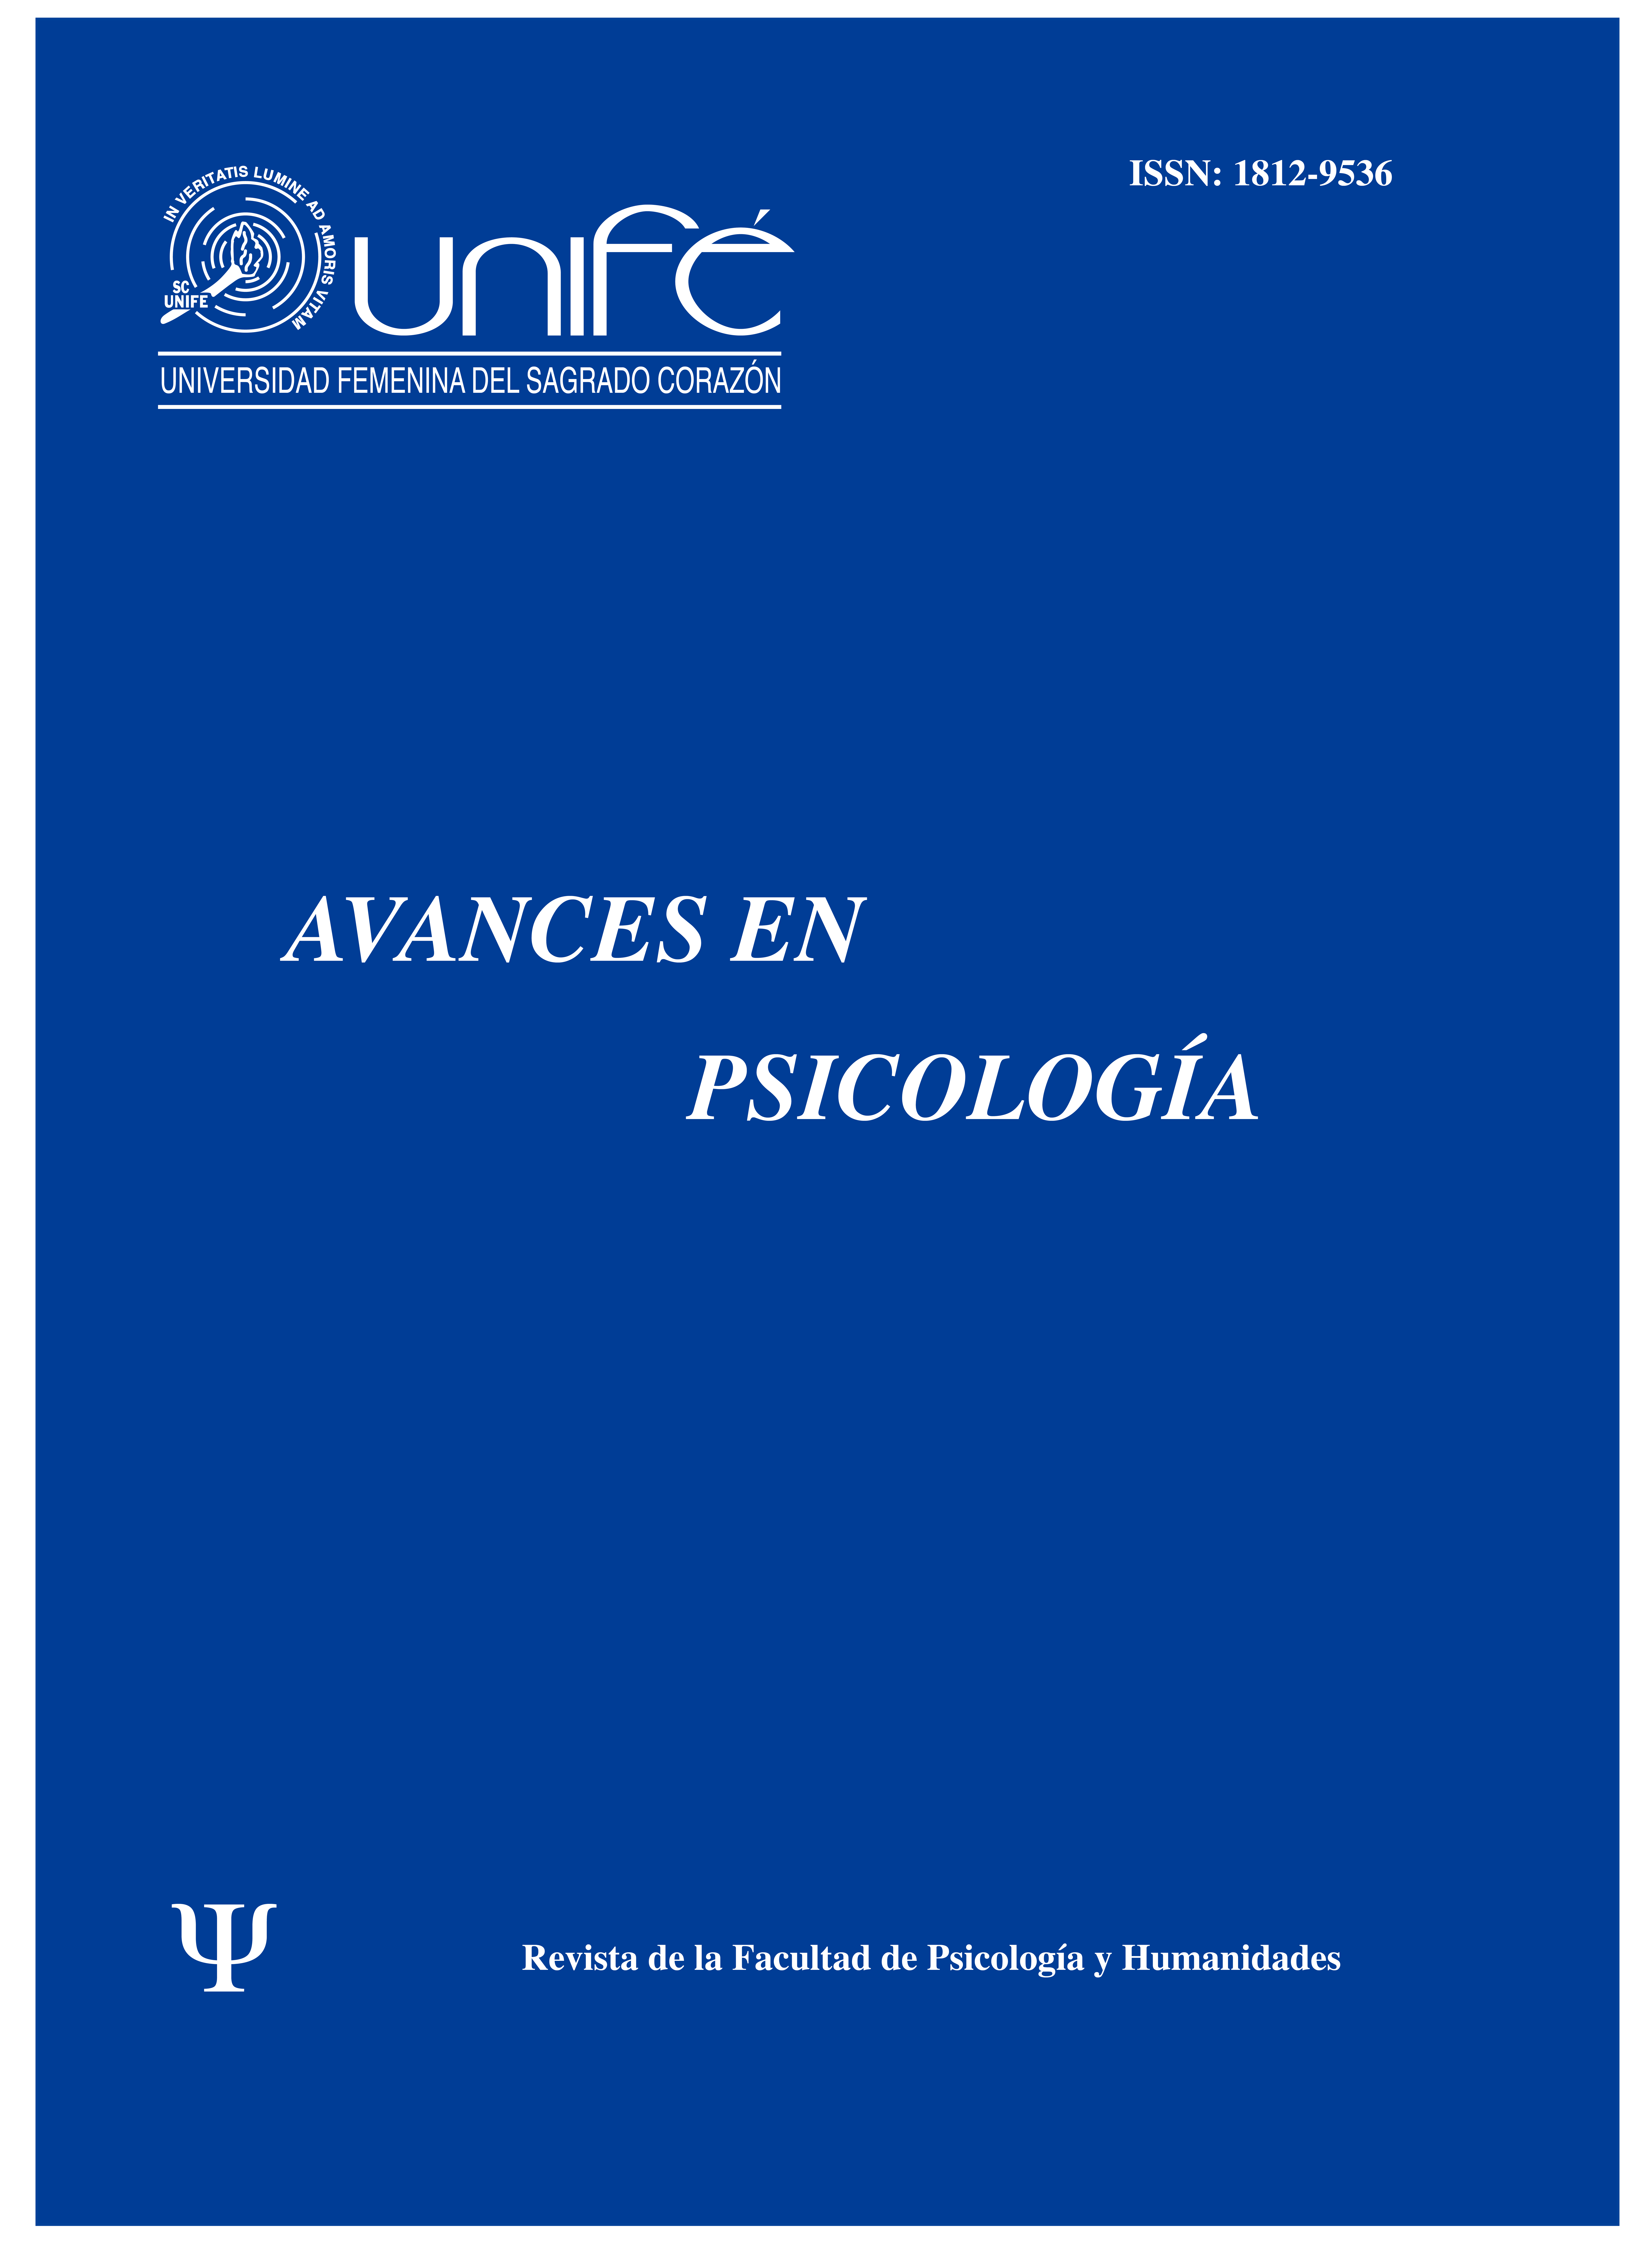 					Ver Vol. 26 Núm. 1 (2018): Avances en Psicología: Revista de la Facultad de Psicología y Humanidades
				